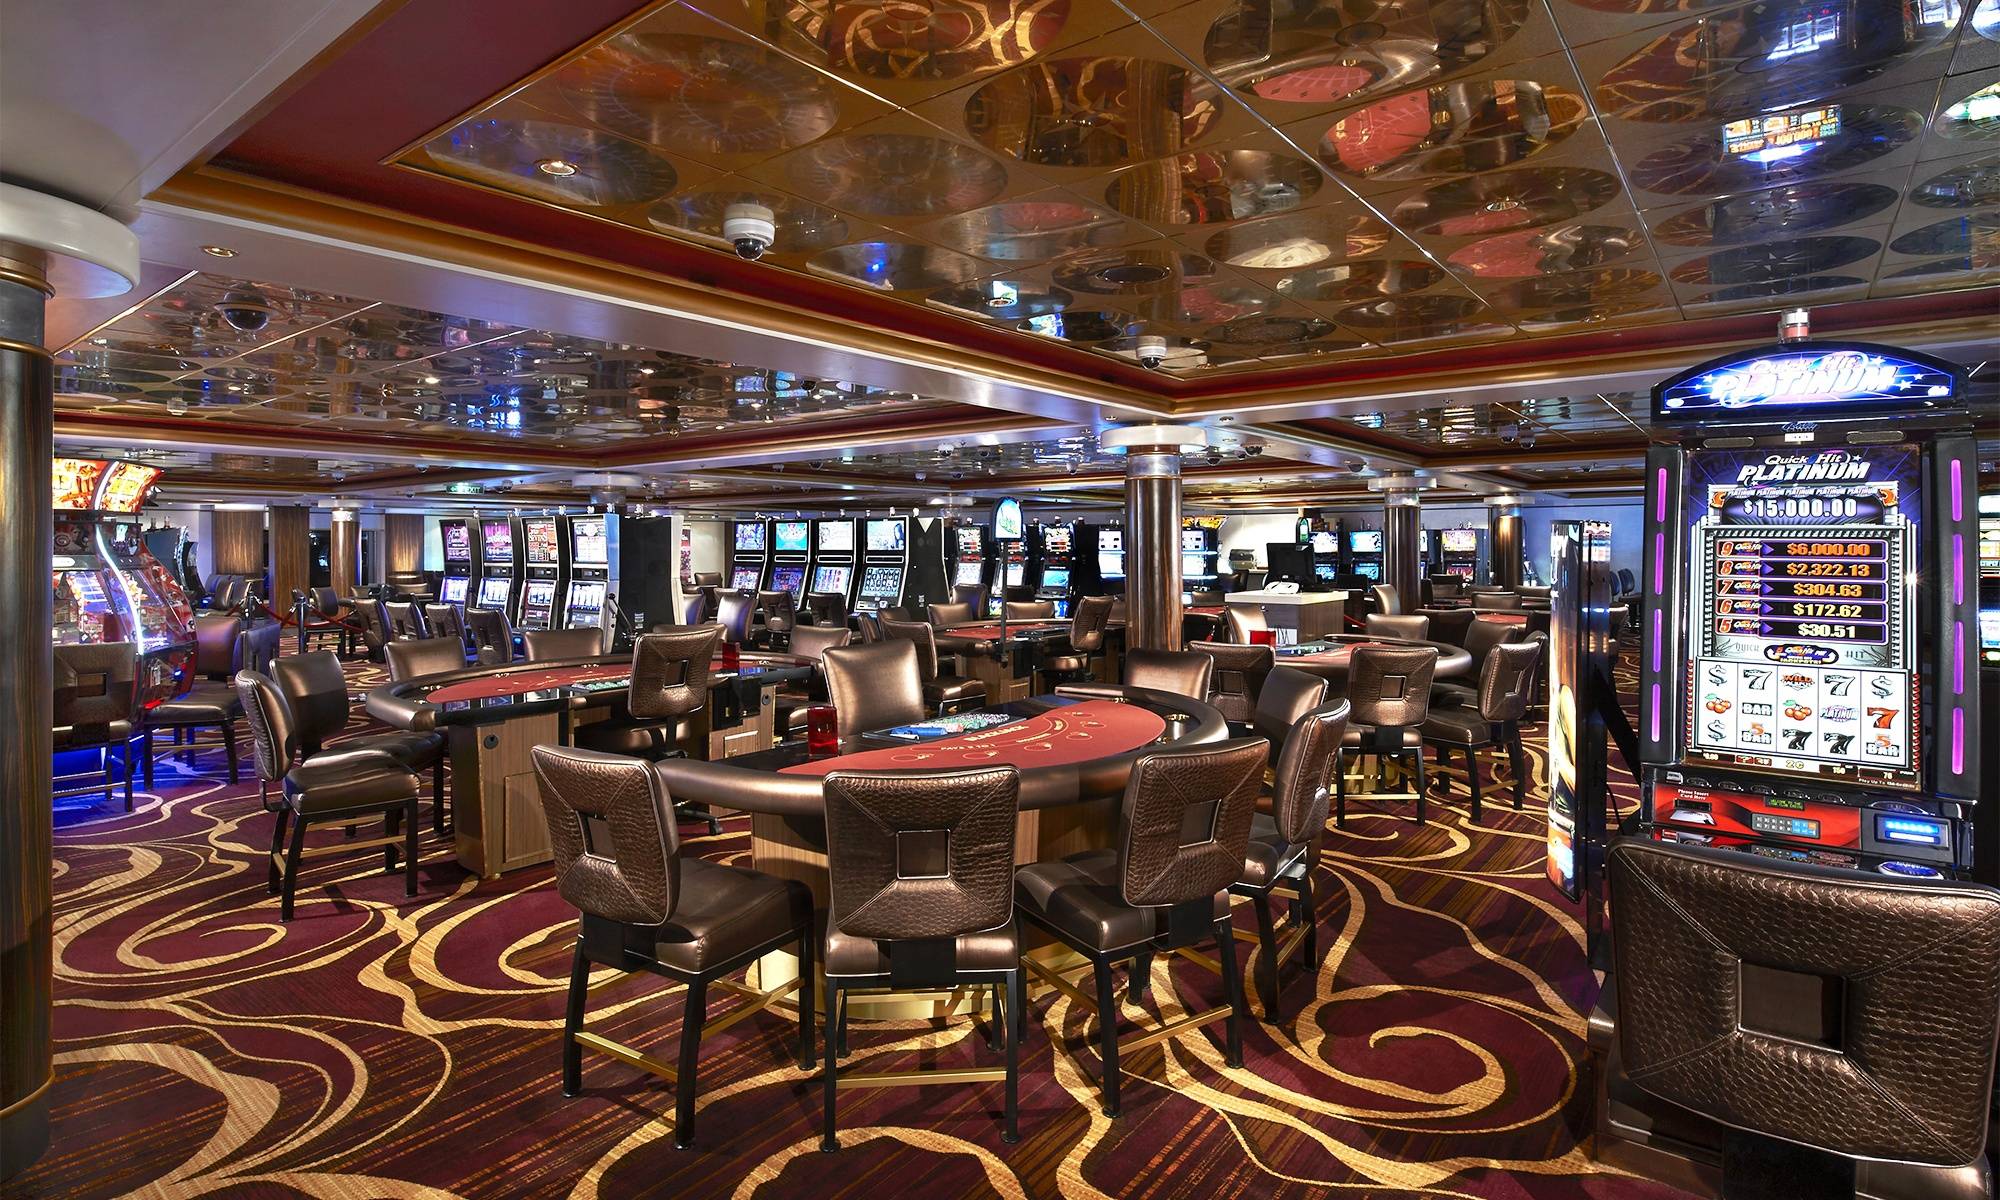 Norwegian Star Public Casino